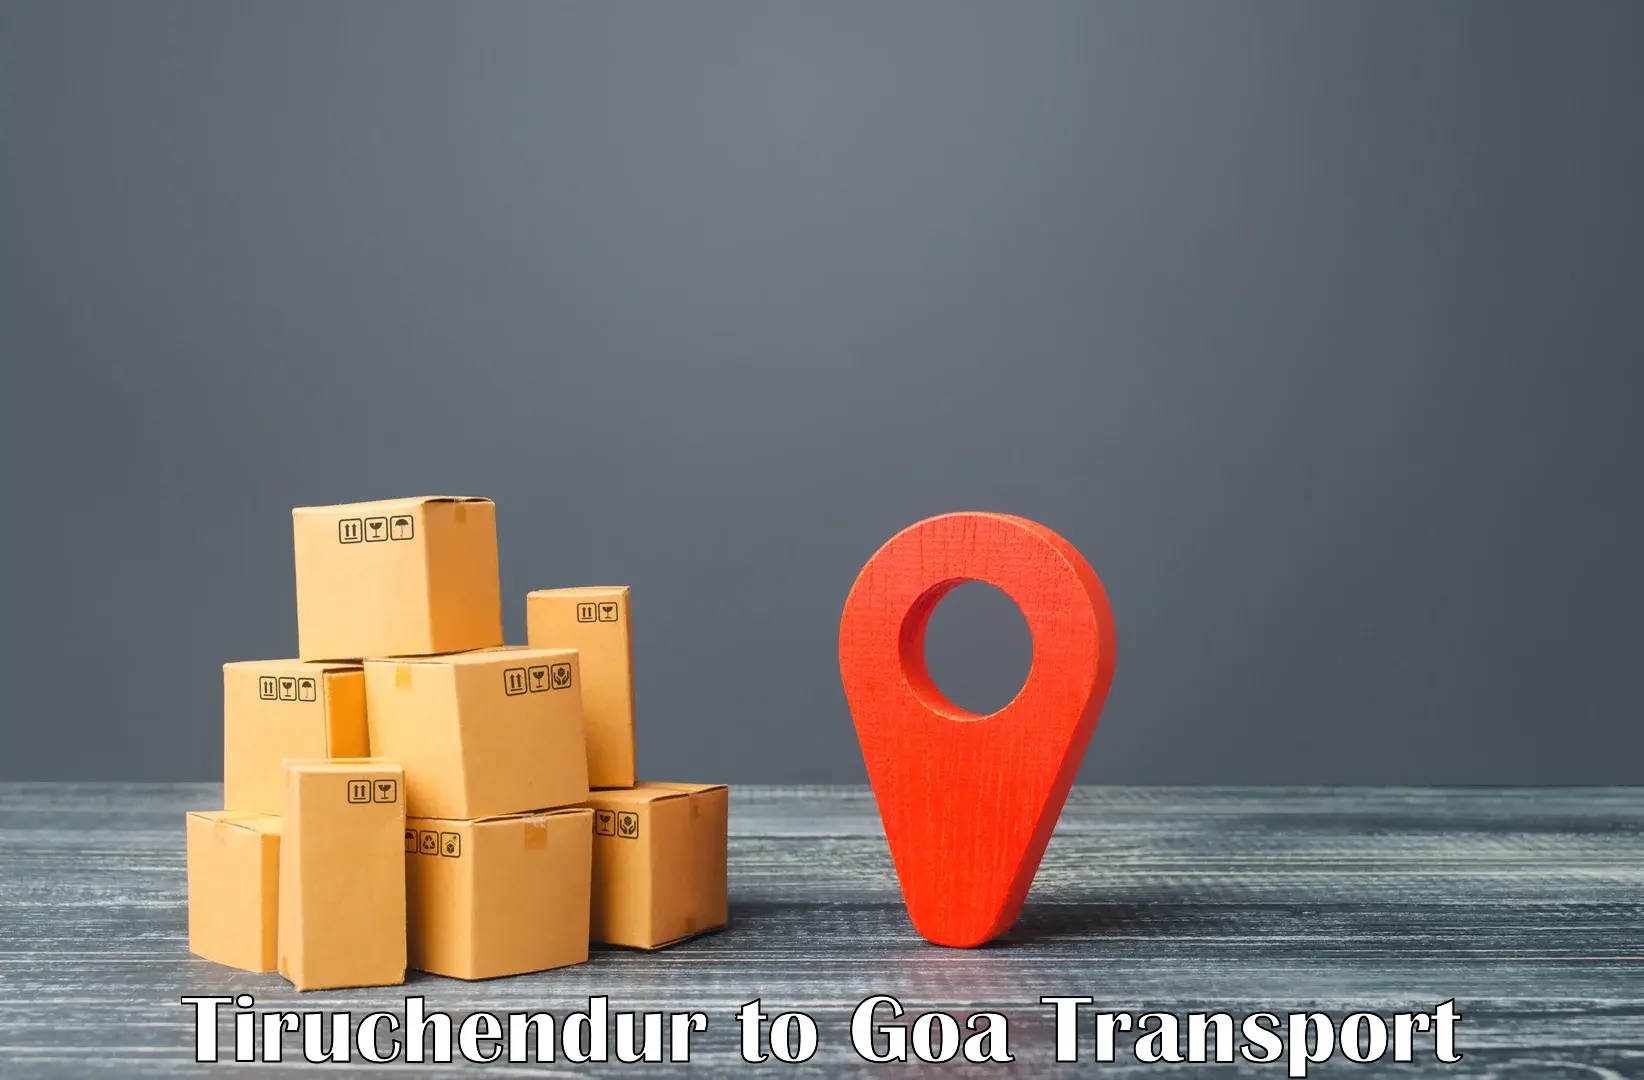 Truck transport companies in India in Tiruchendur to Panaji